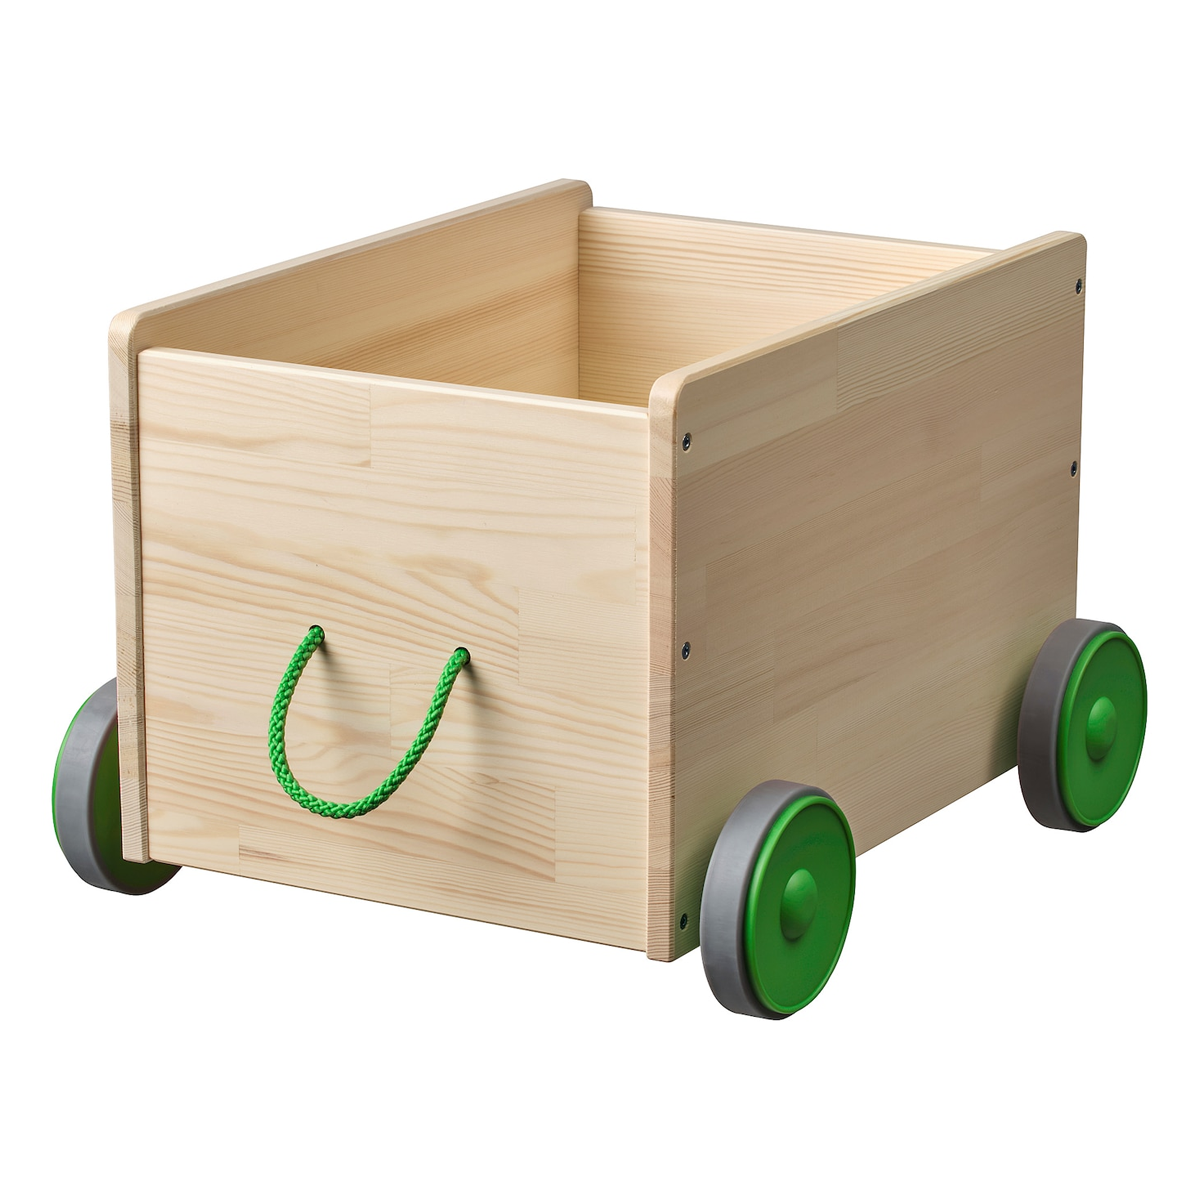 Toy storage with wheels - FLISAT